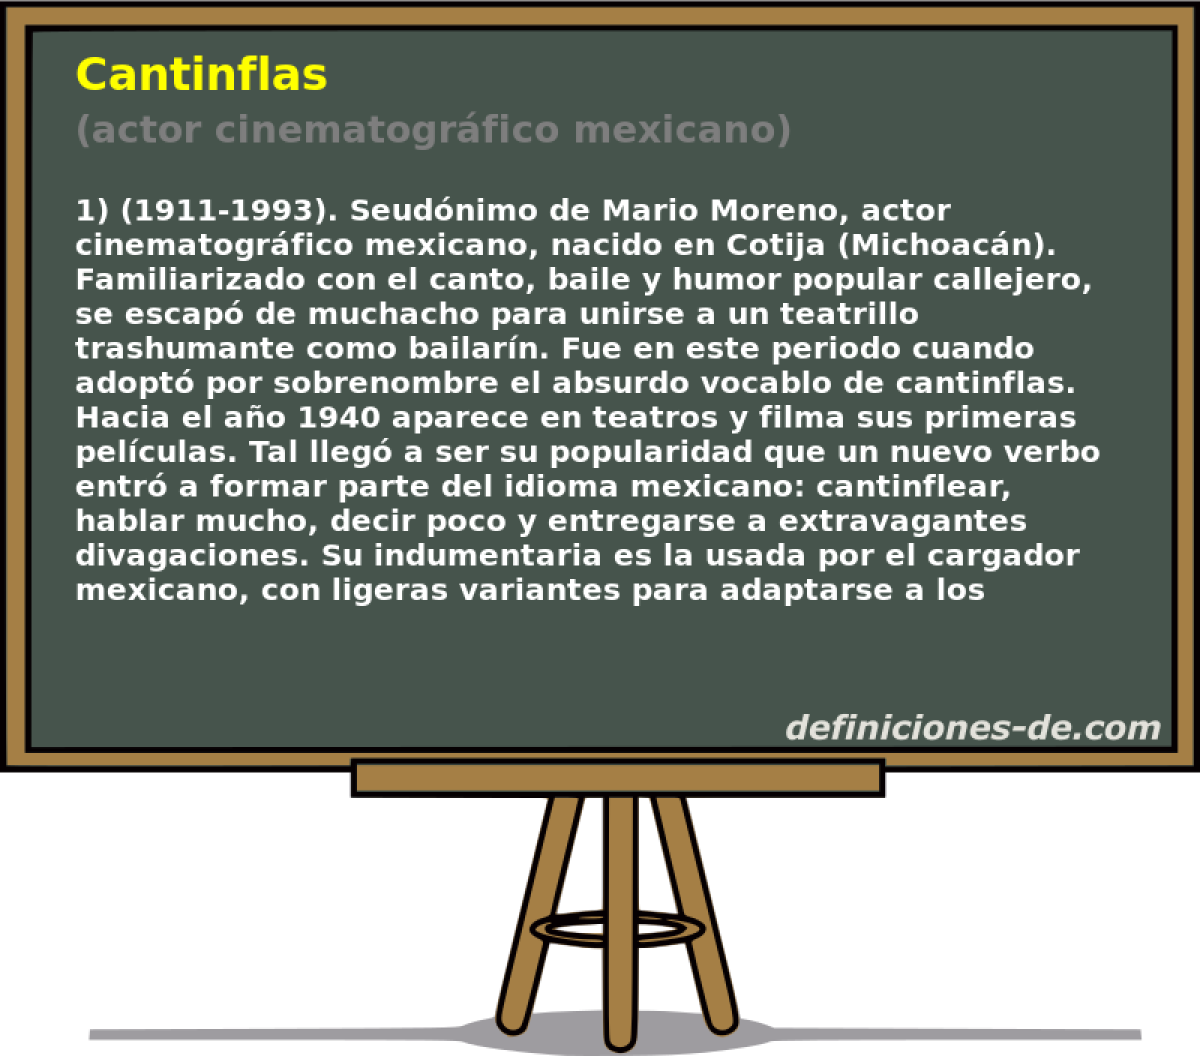 Cantinflas (actor cinematogrfico mexicano)